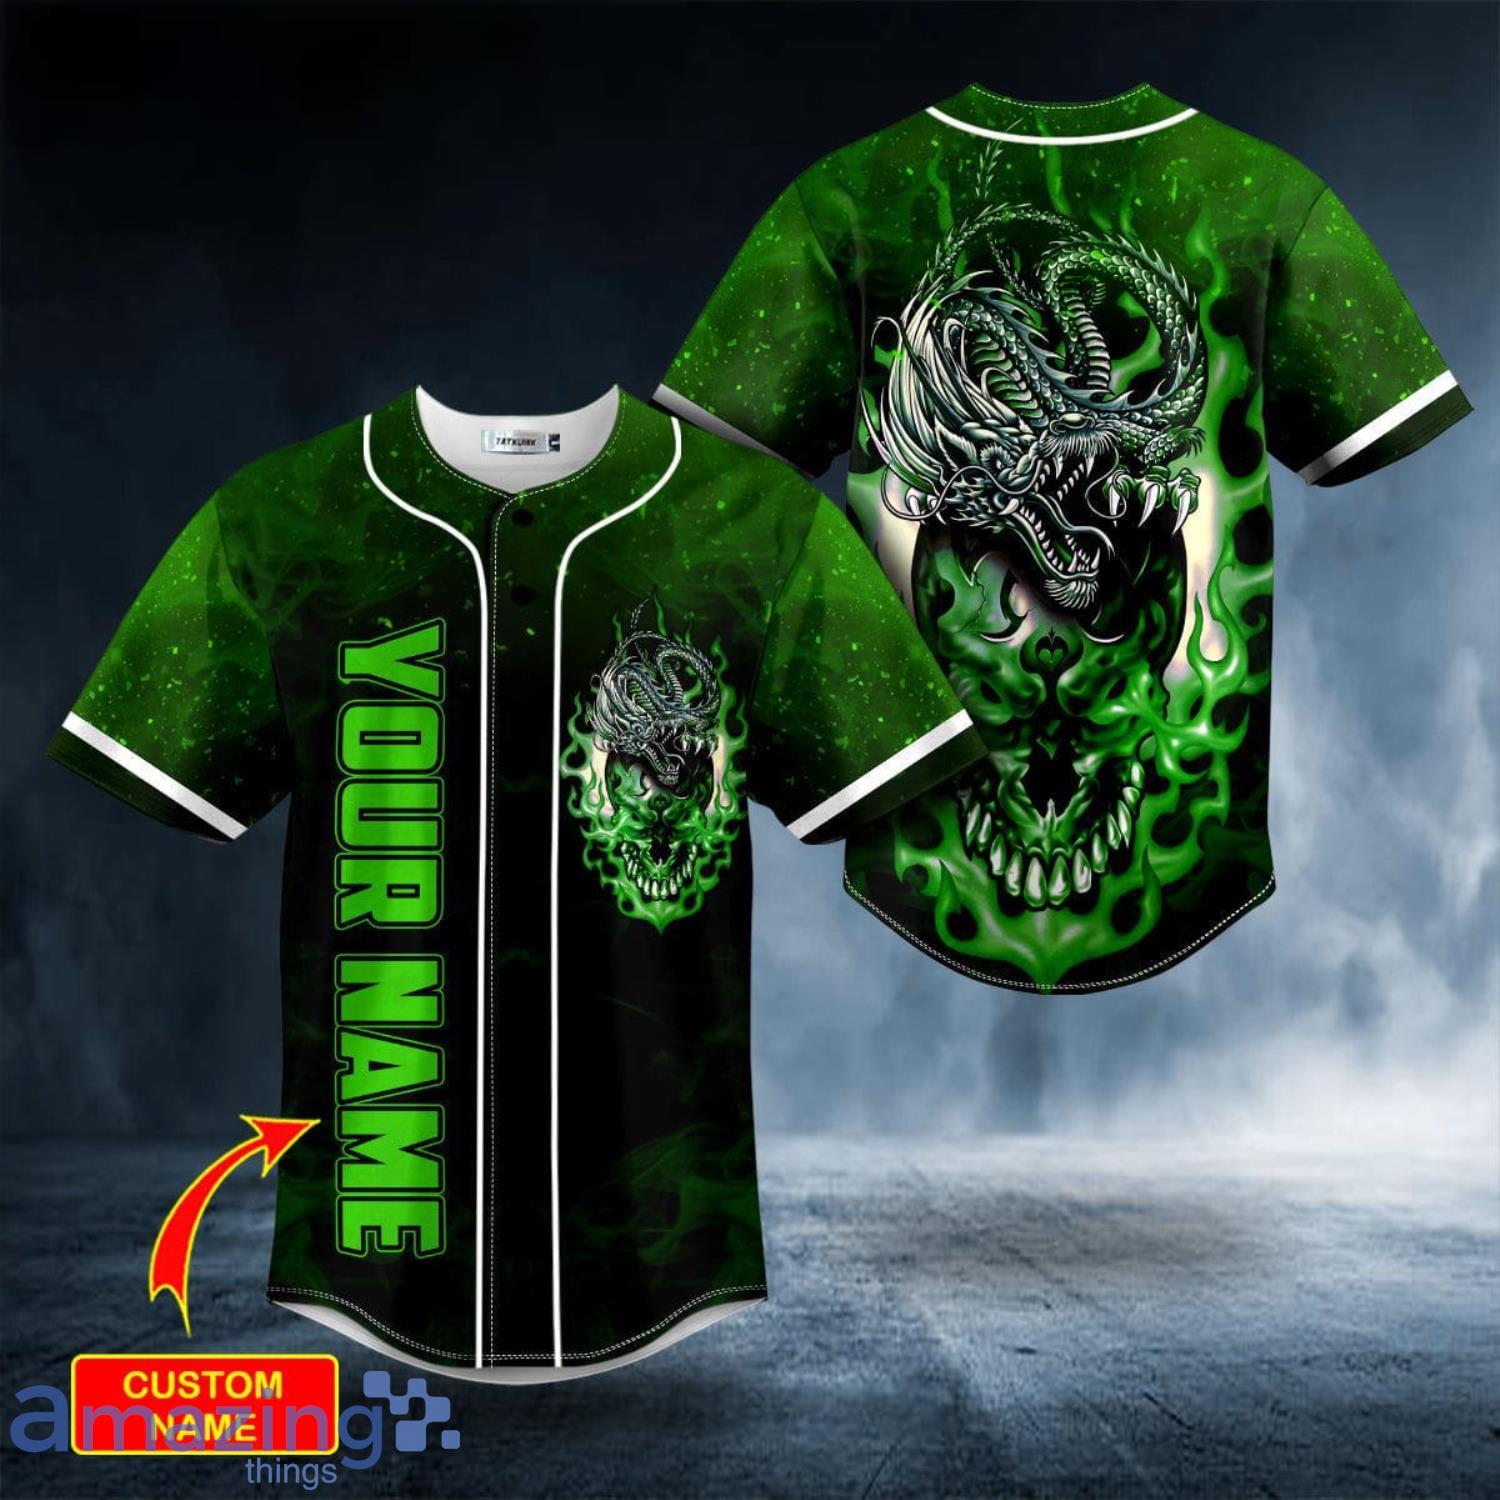 Green ODM Dragon Skull Custom Name All Over Print Baseball Jersey